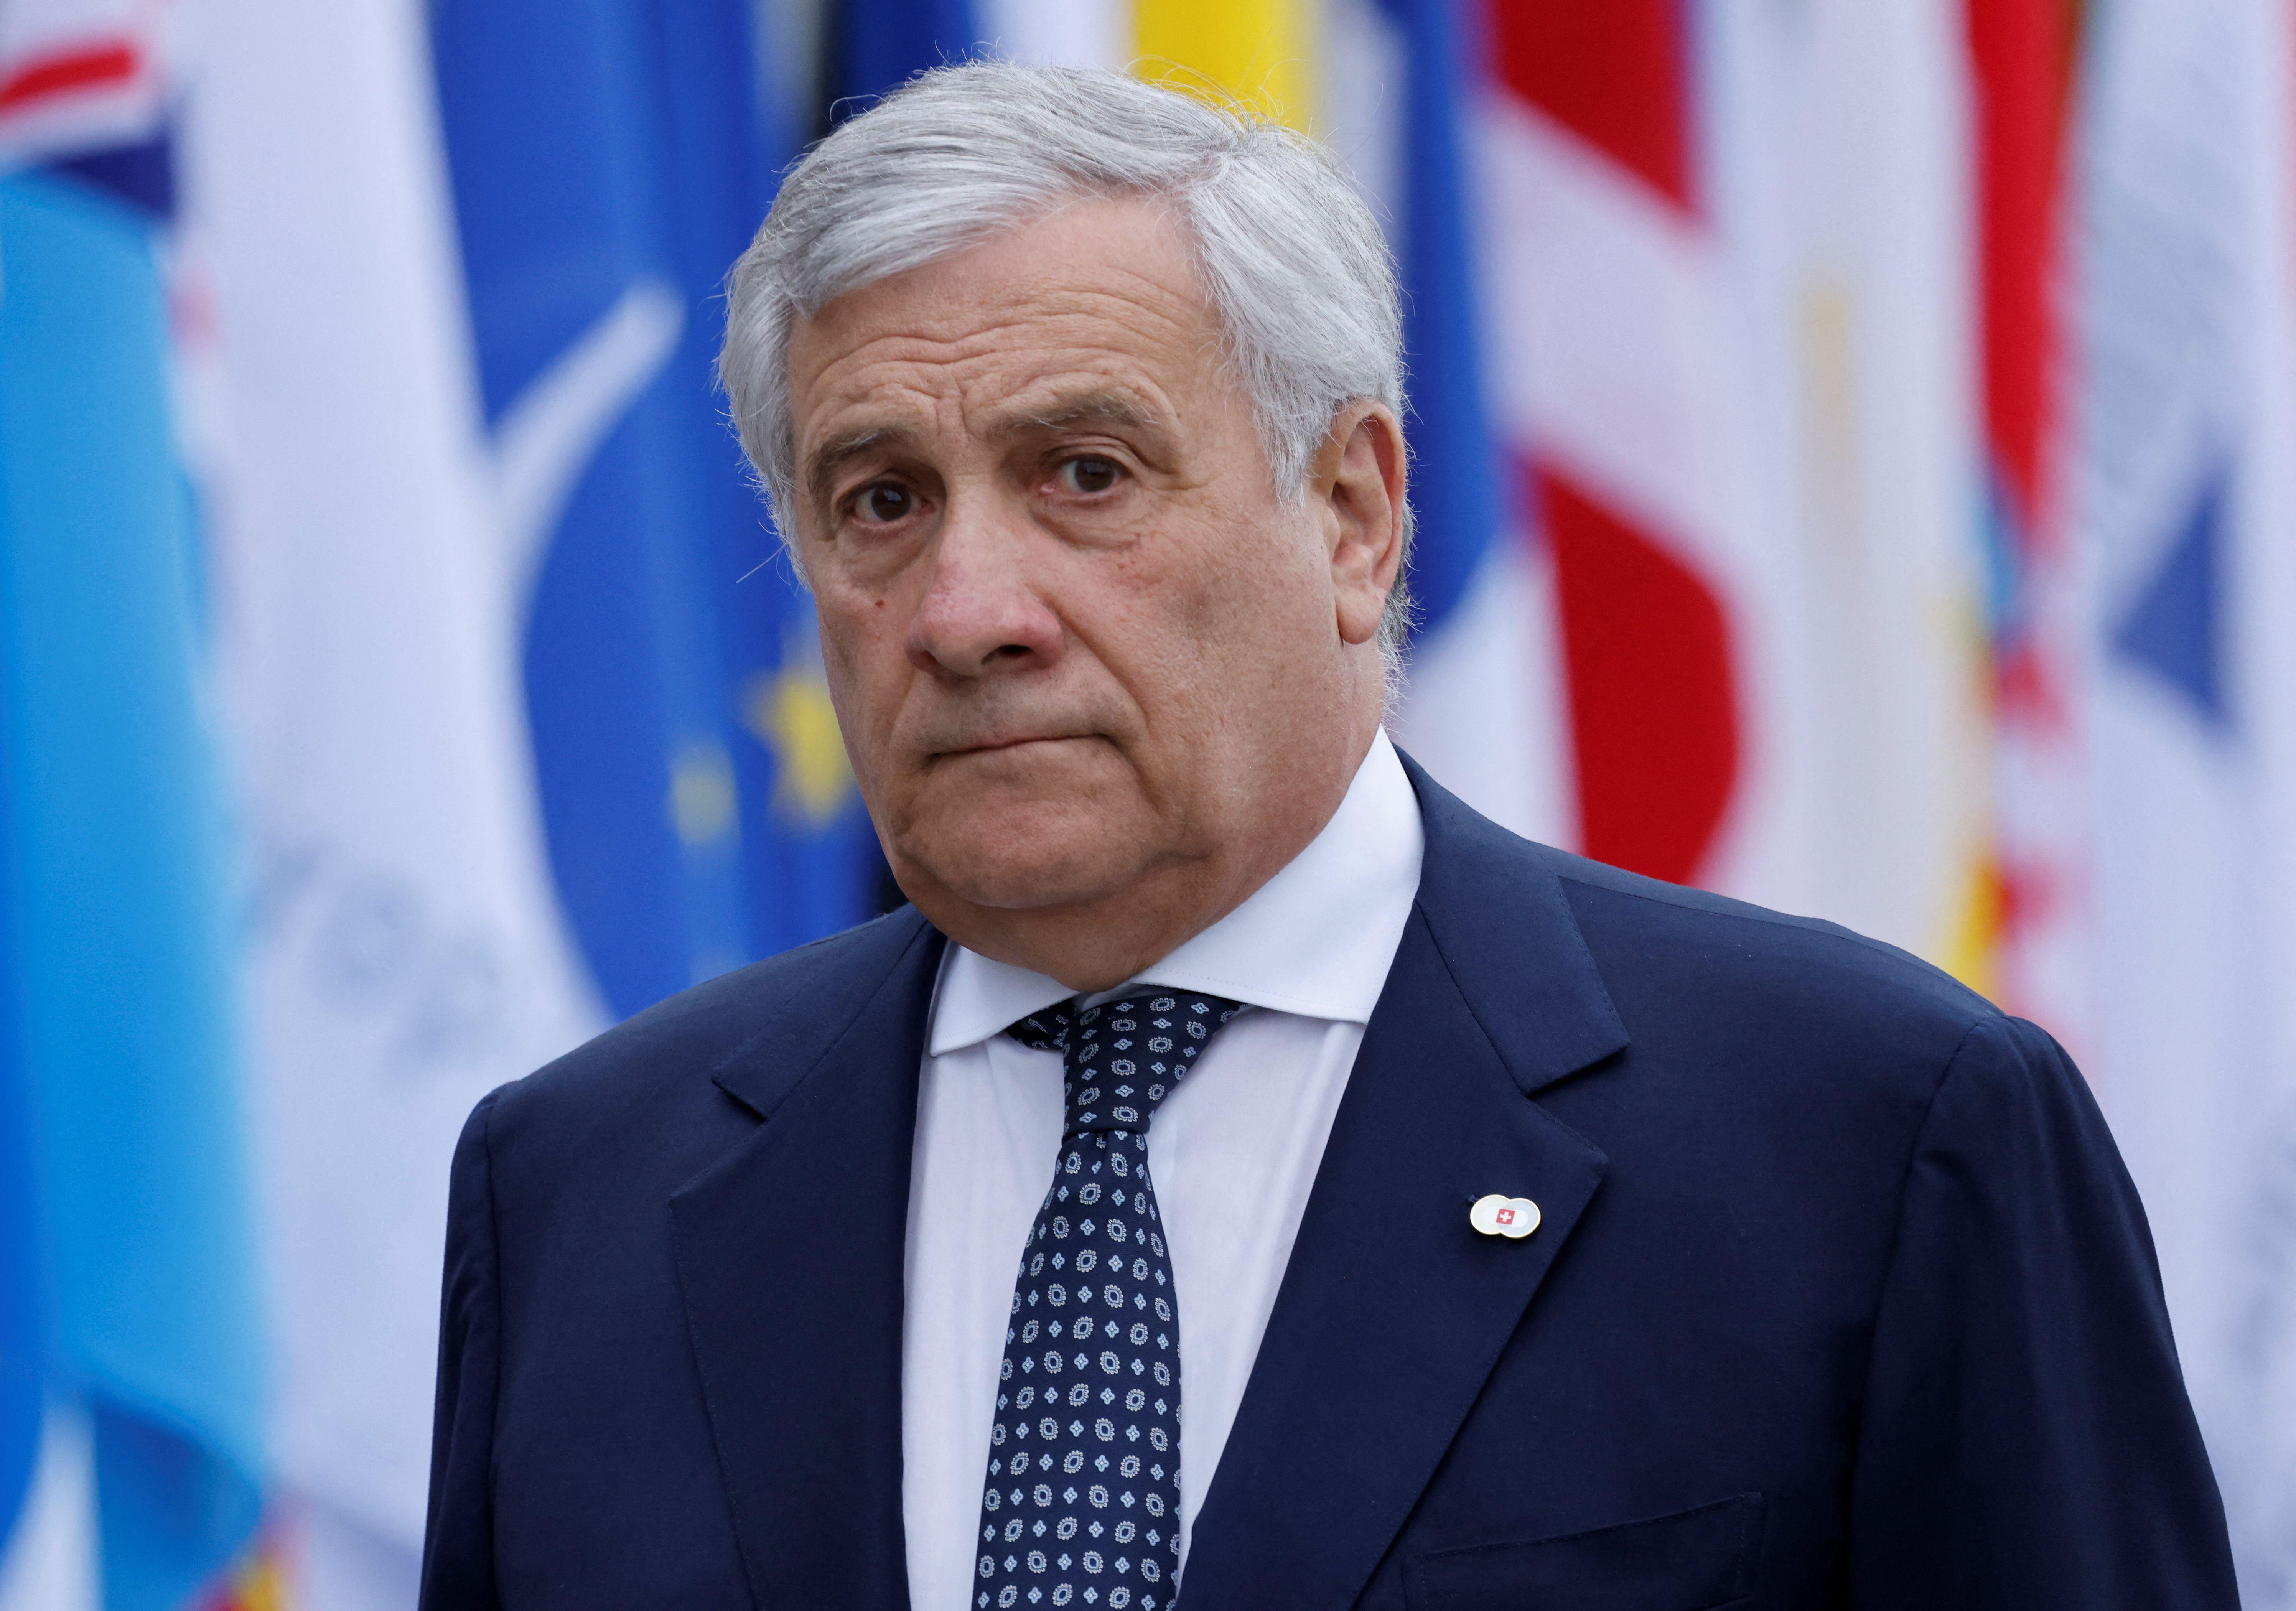 Ue - Tajani: Noi votato come Schlein? Chi ha detto no allora come Salis e Conte